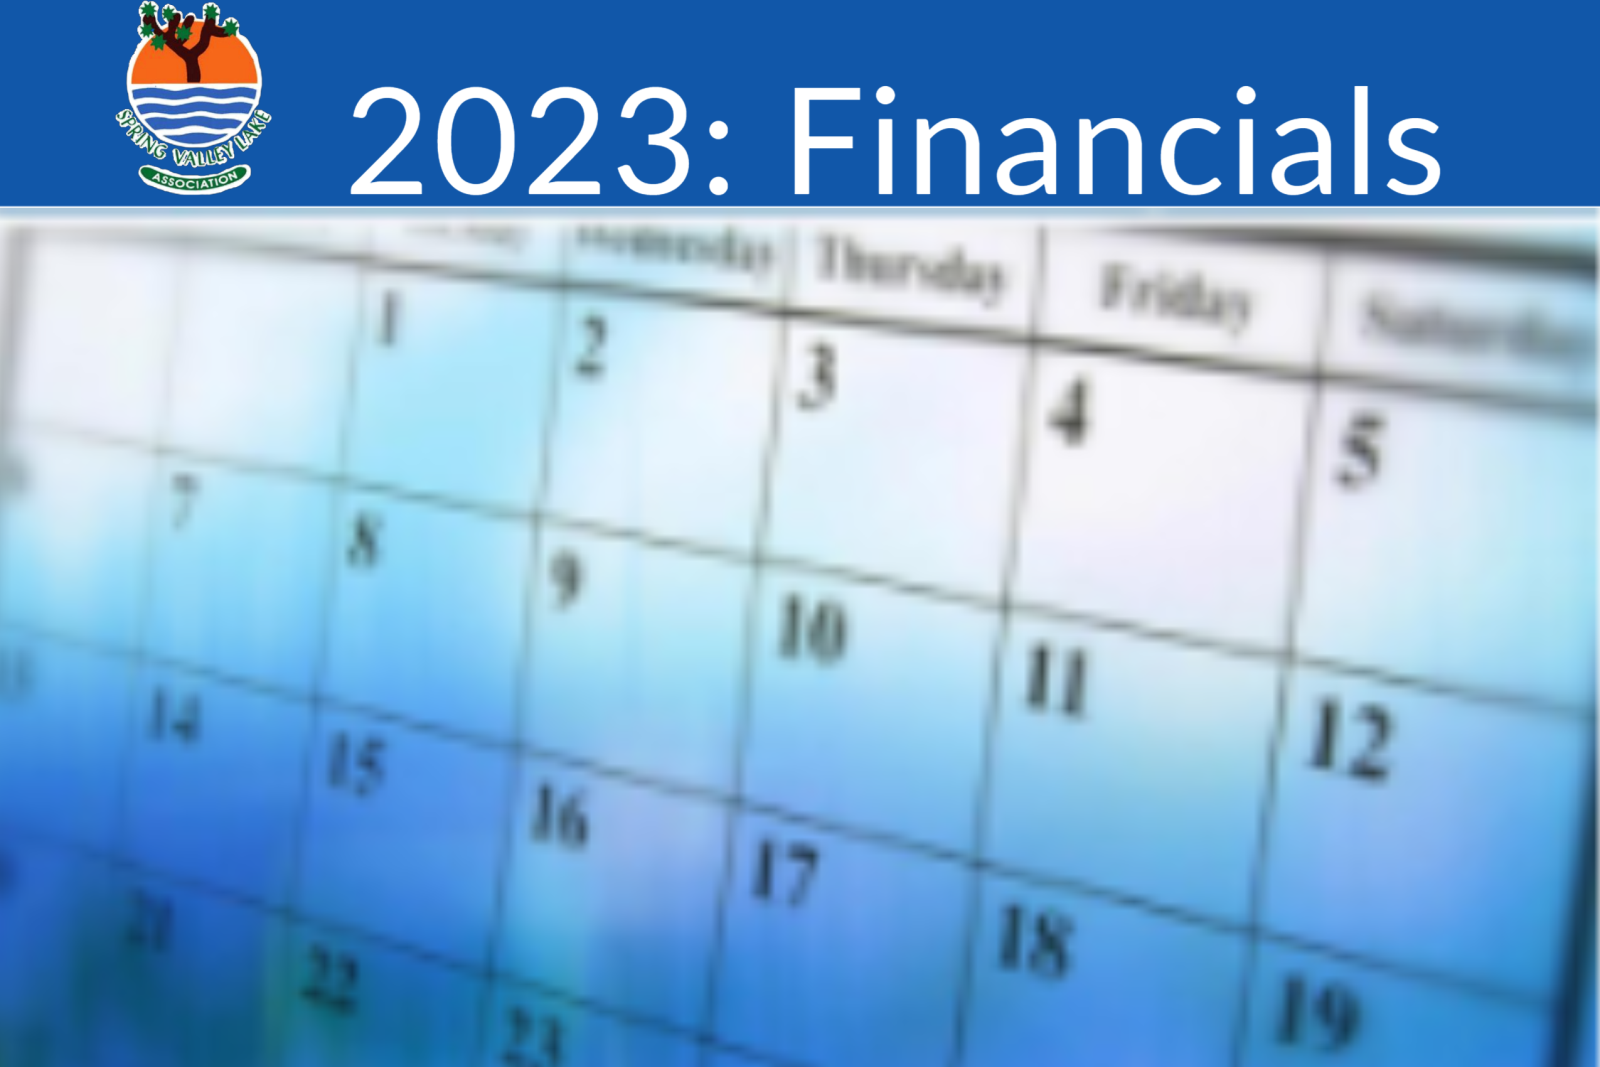 2023: Financials